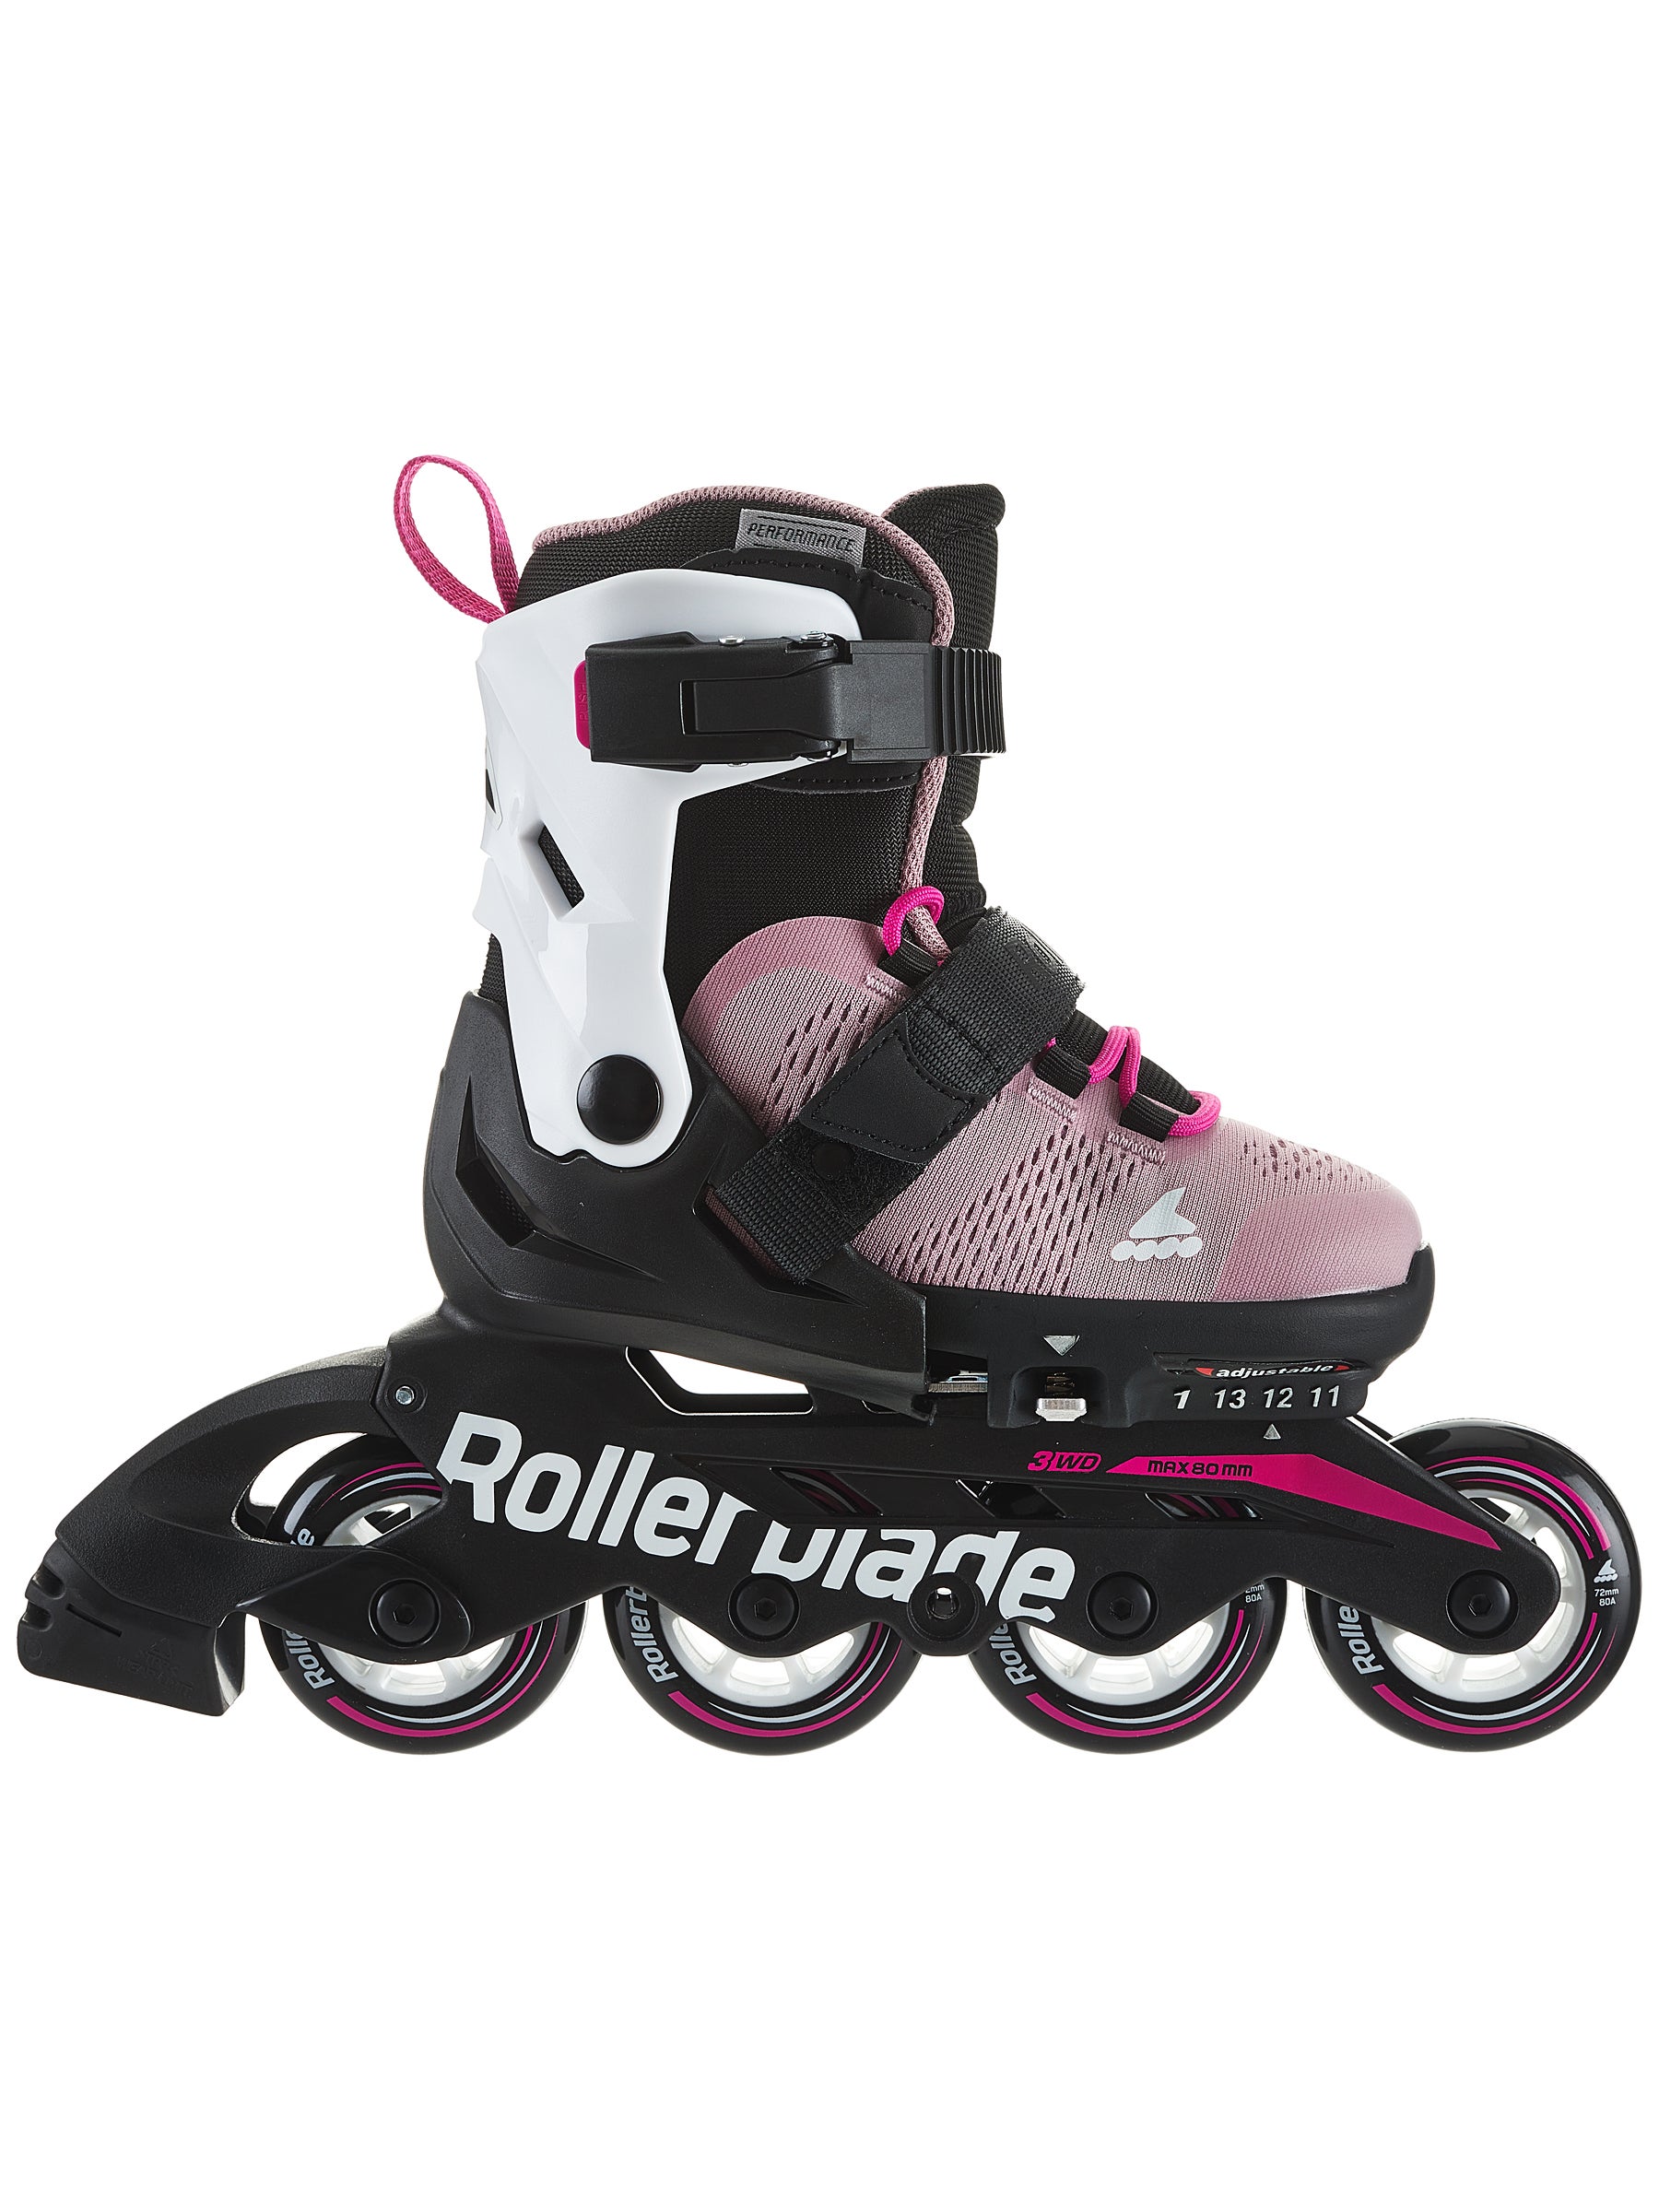 Kids Inline Skates 3 Size Adjustable Roller Blades for Beginner Boys and Girls 